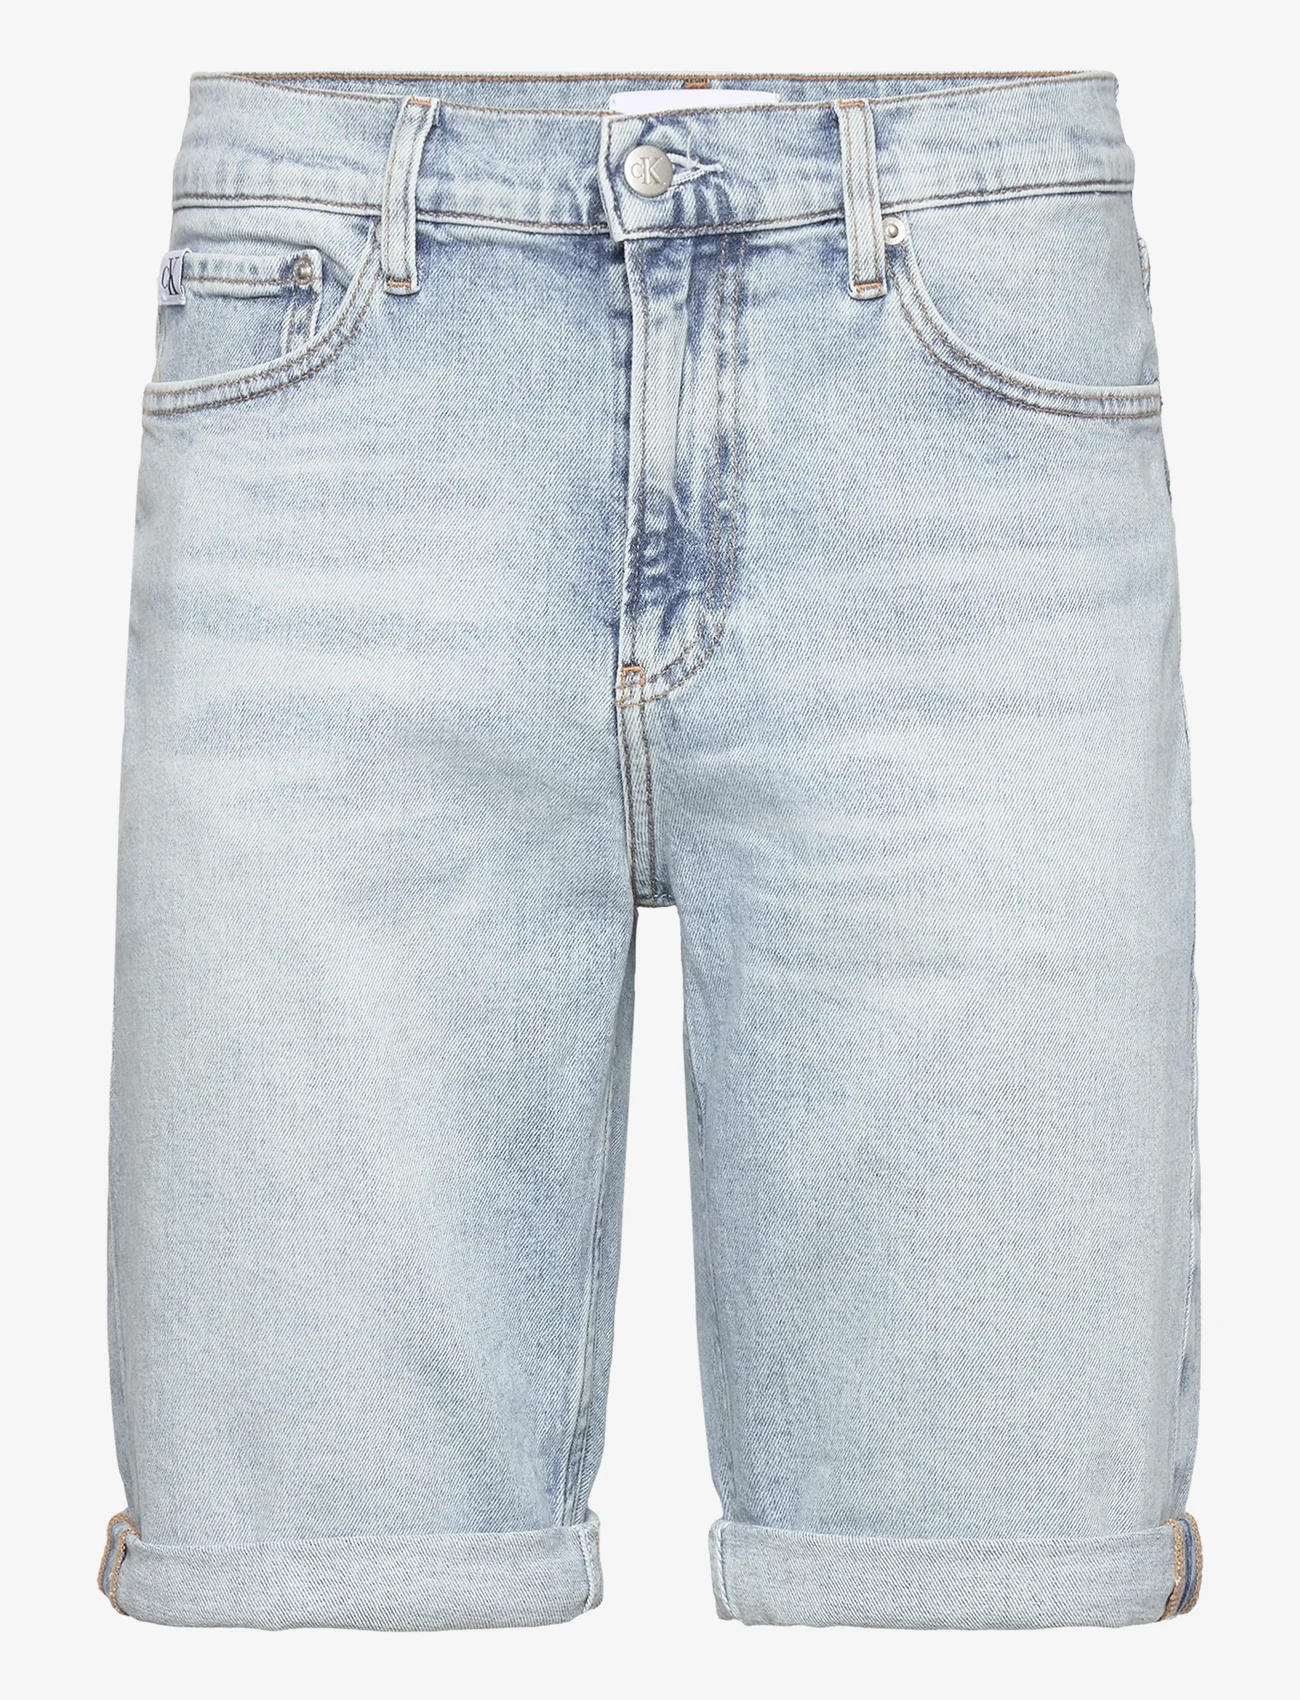 Calvin Klein Jeans - SLIM SHORT - jeansshorts - denim light - 0